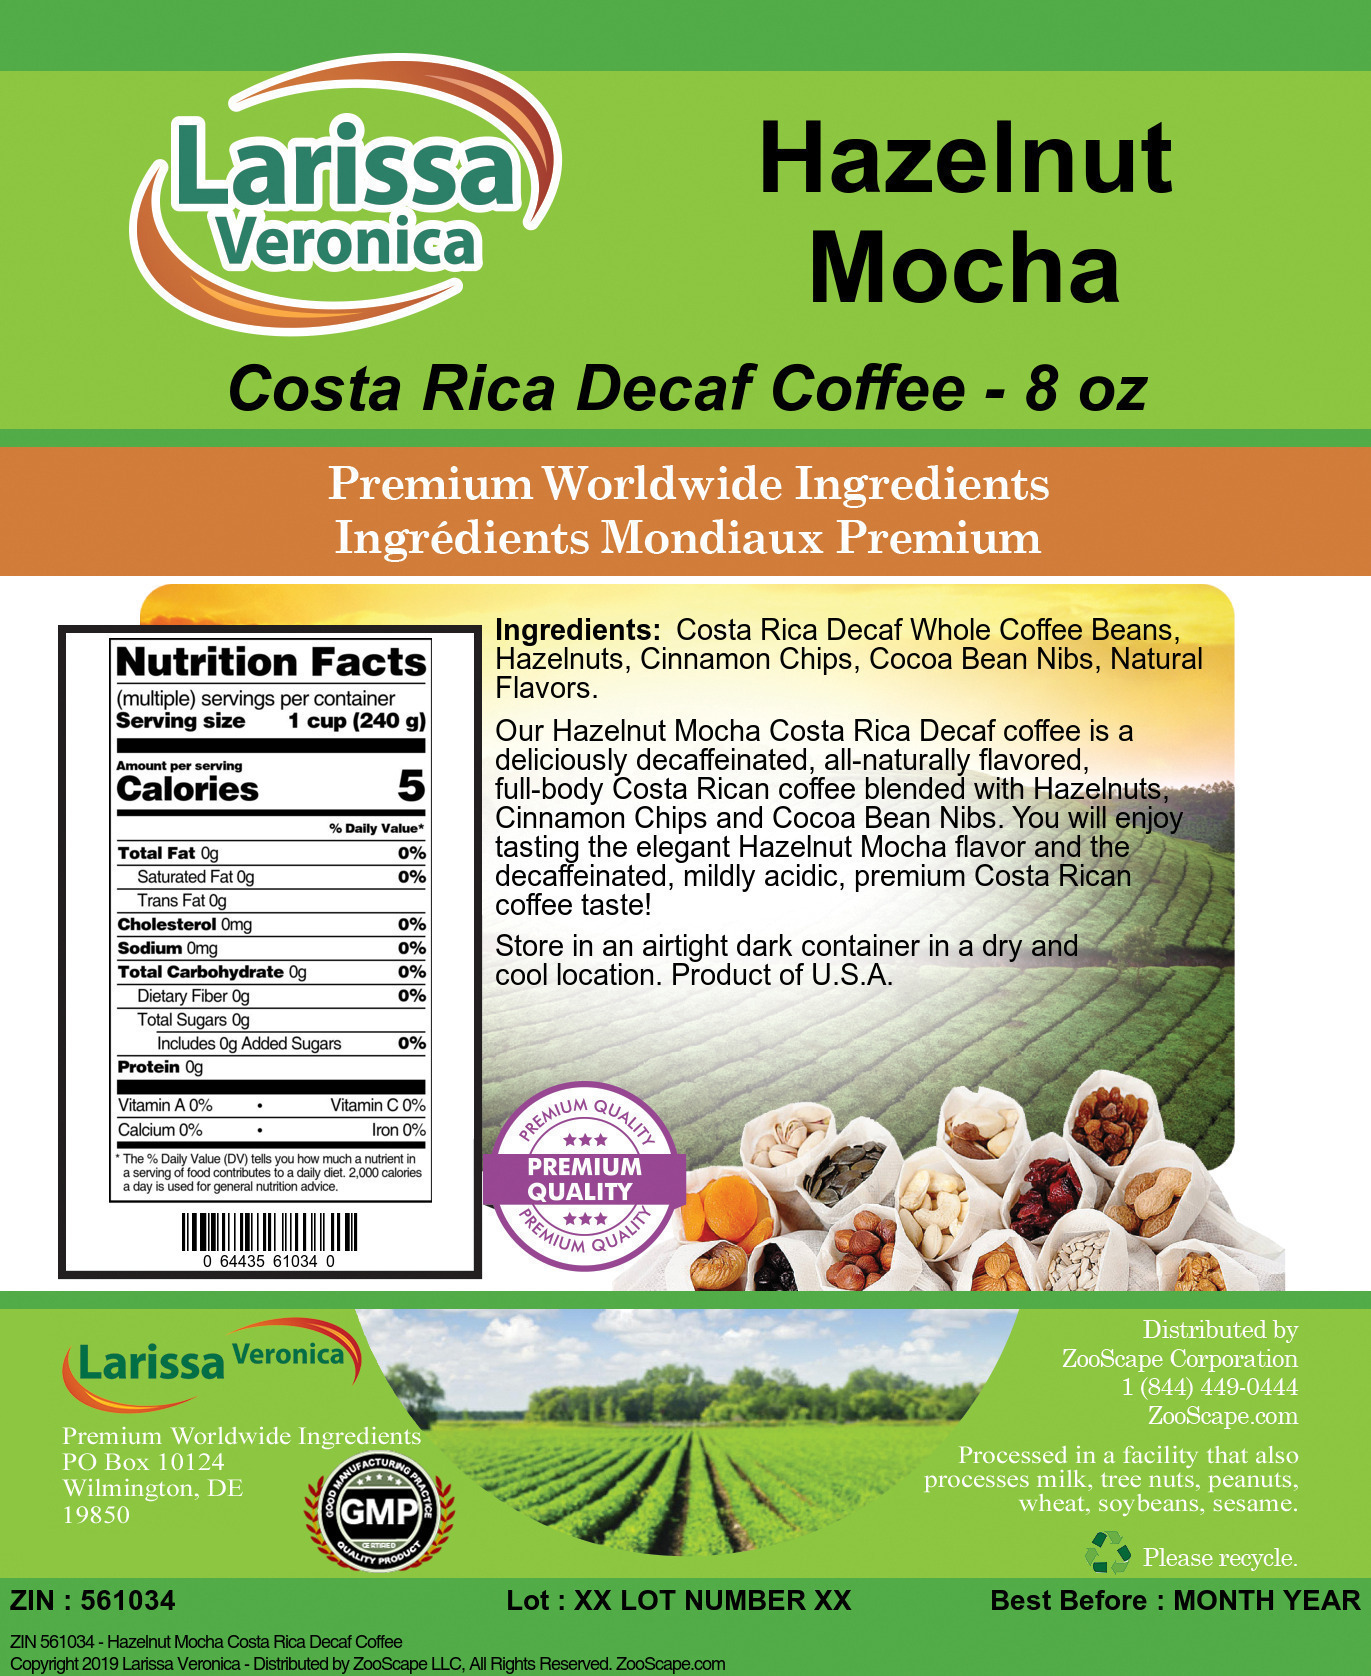 Hazelnut Mocha Costa Rica Decaf Coffee - Label